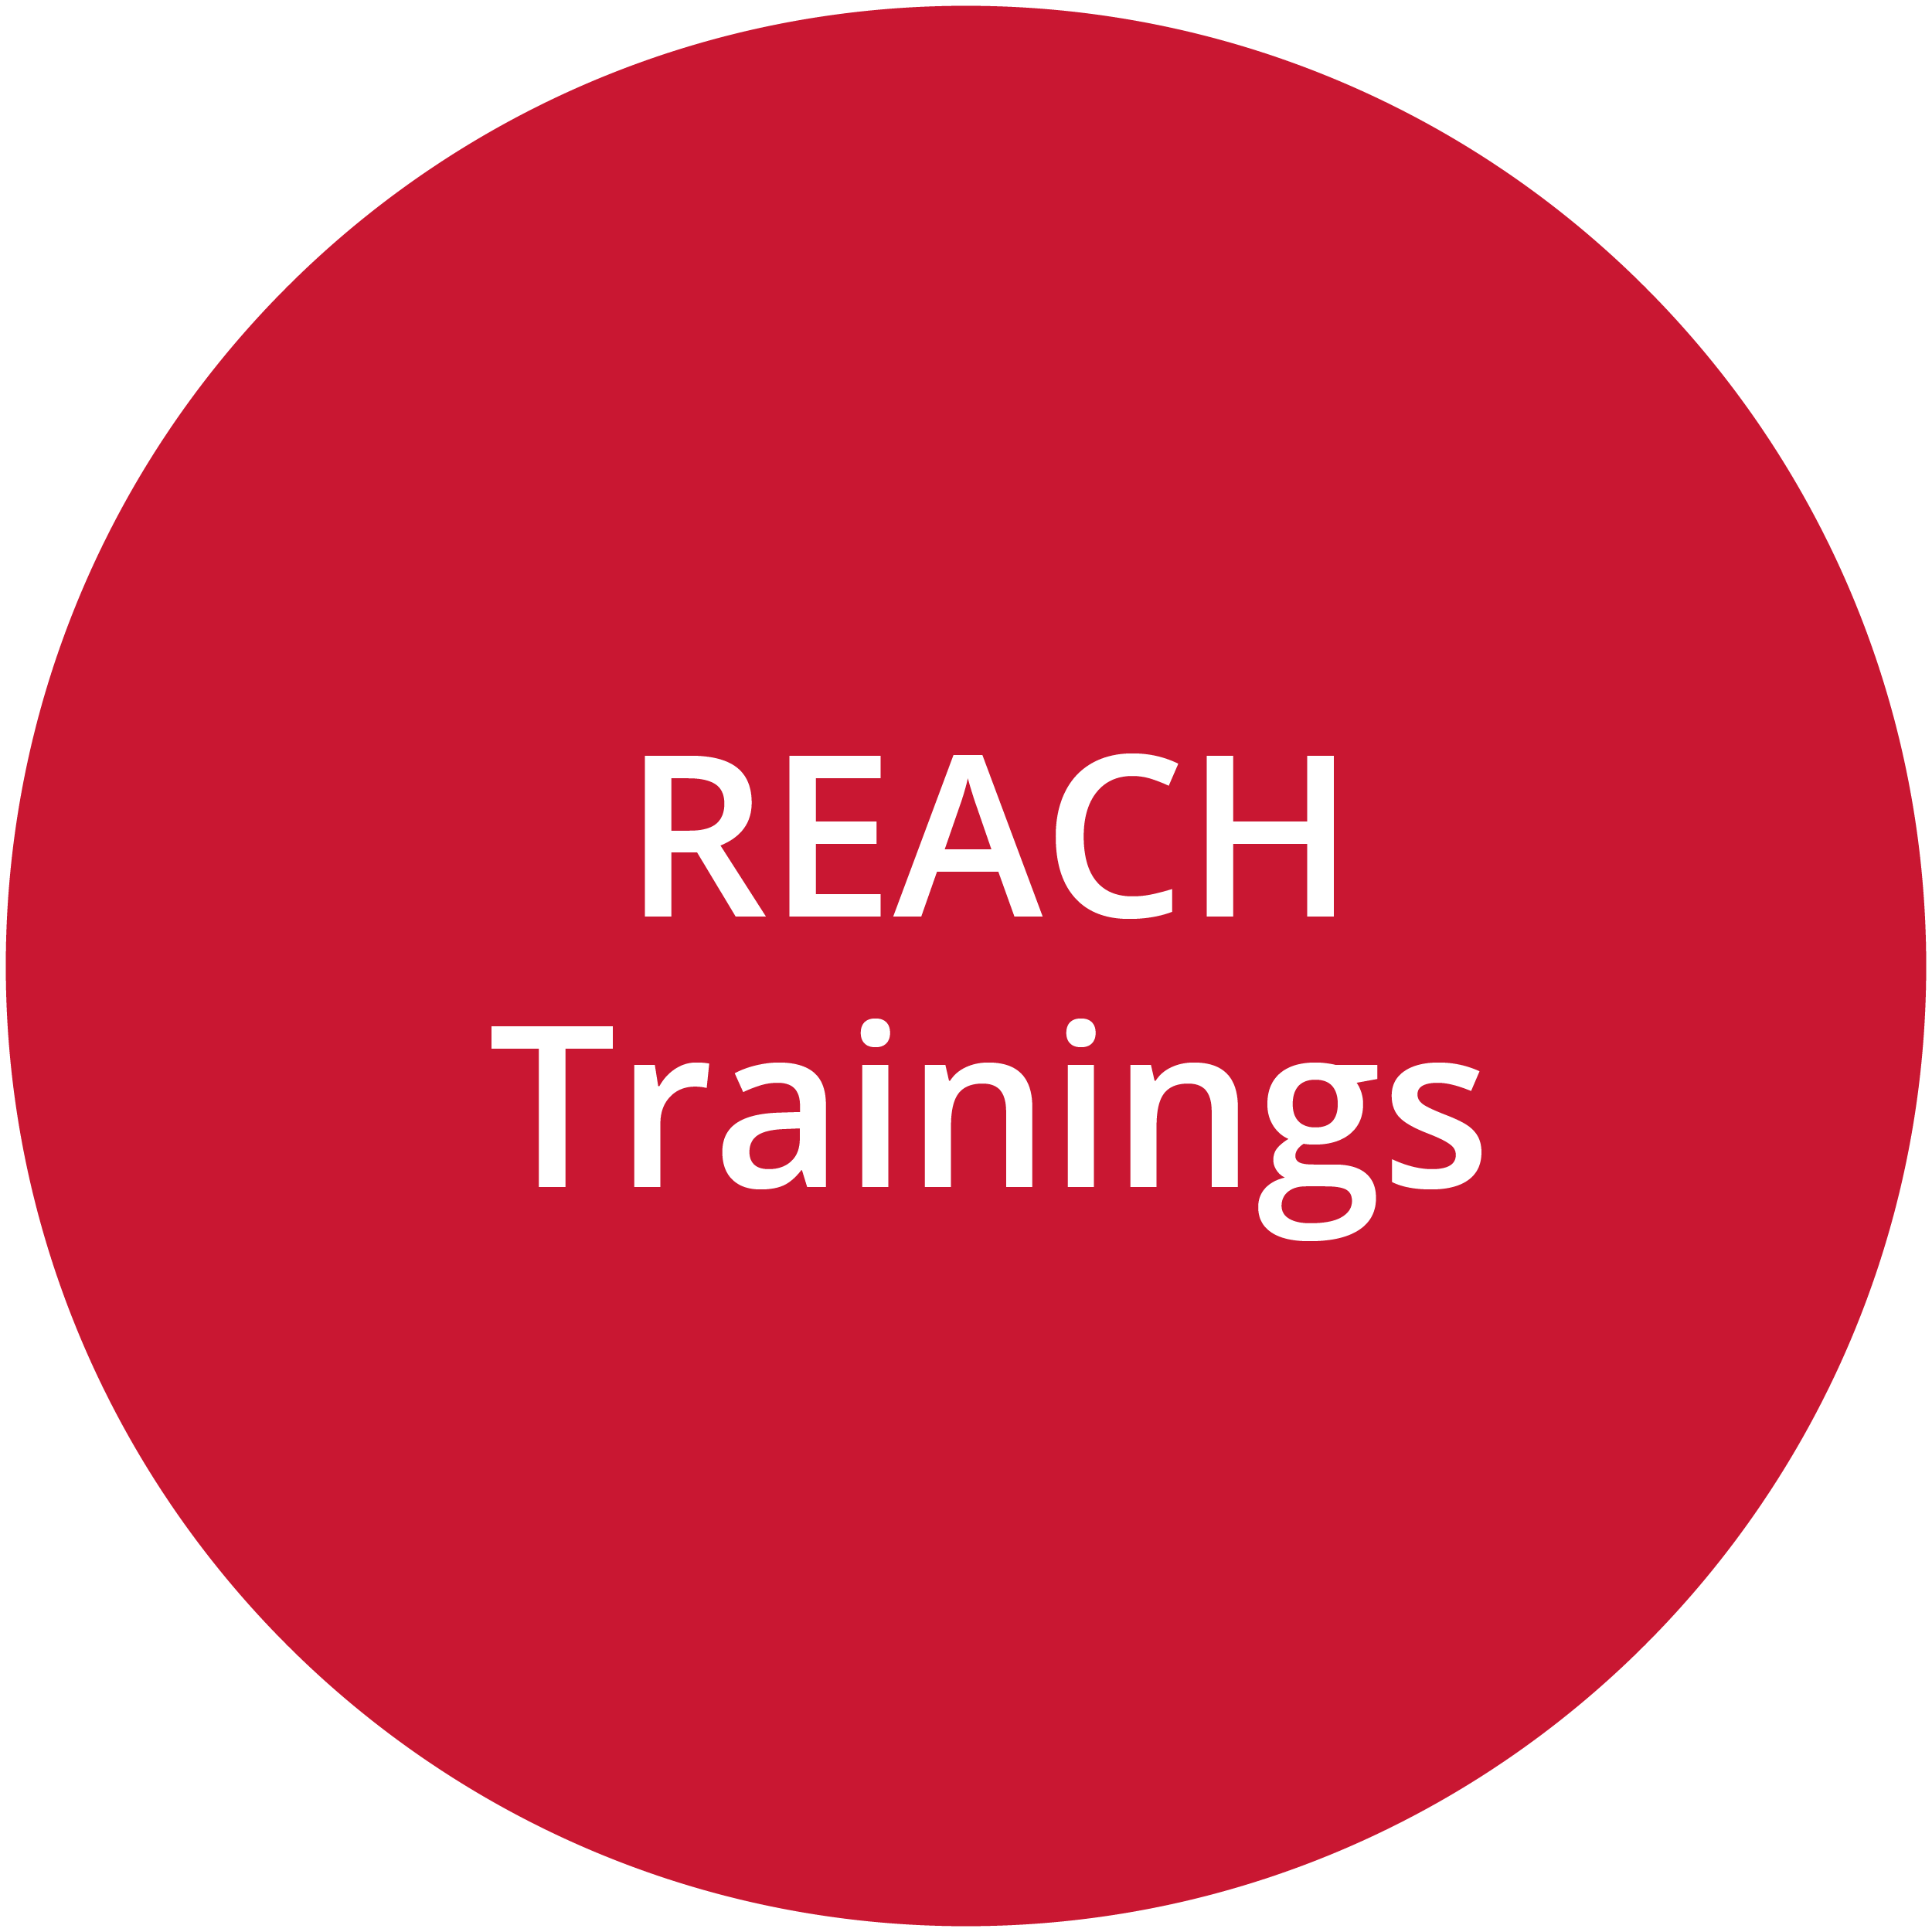 REACH Trainings